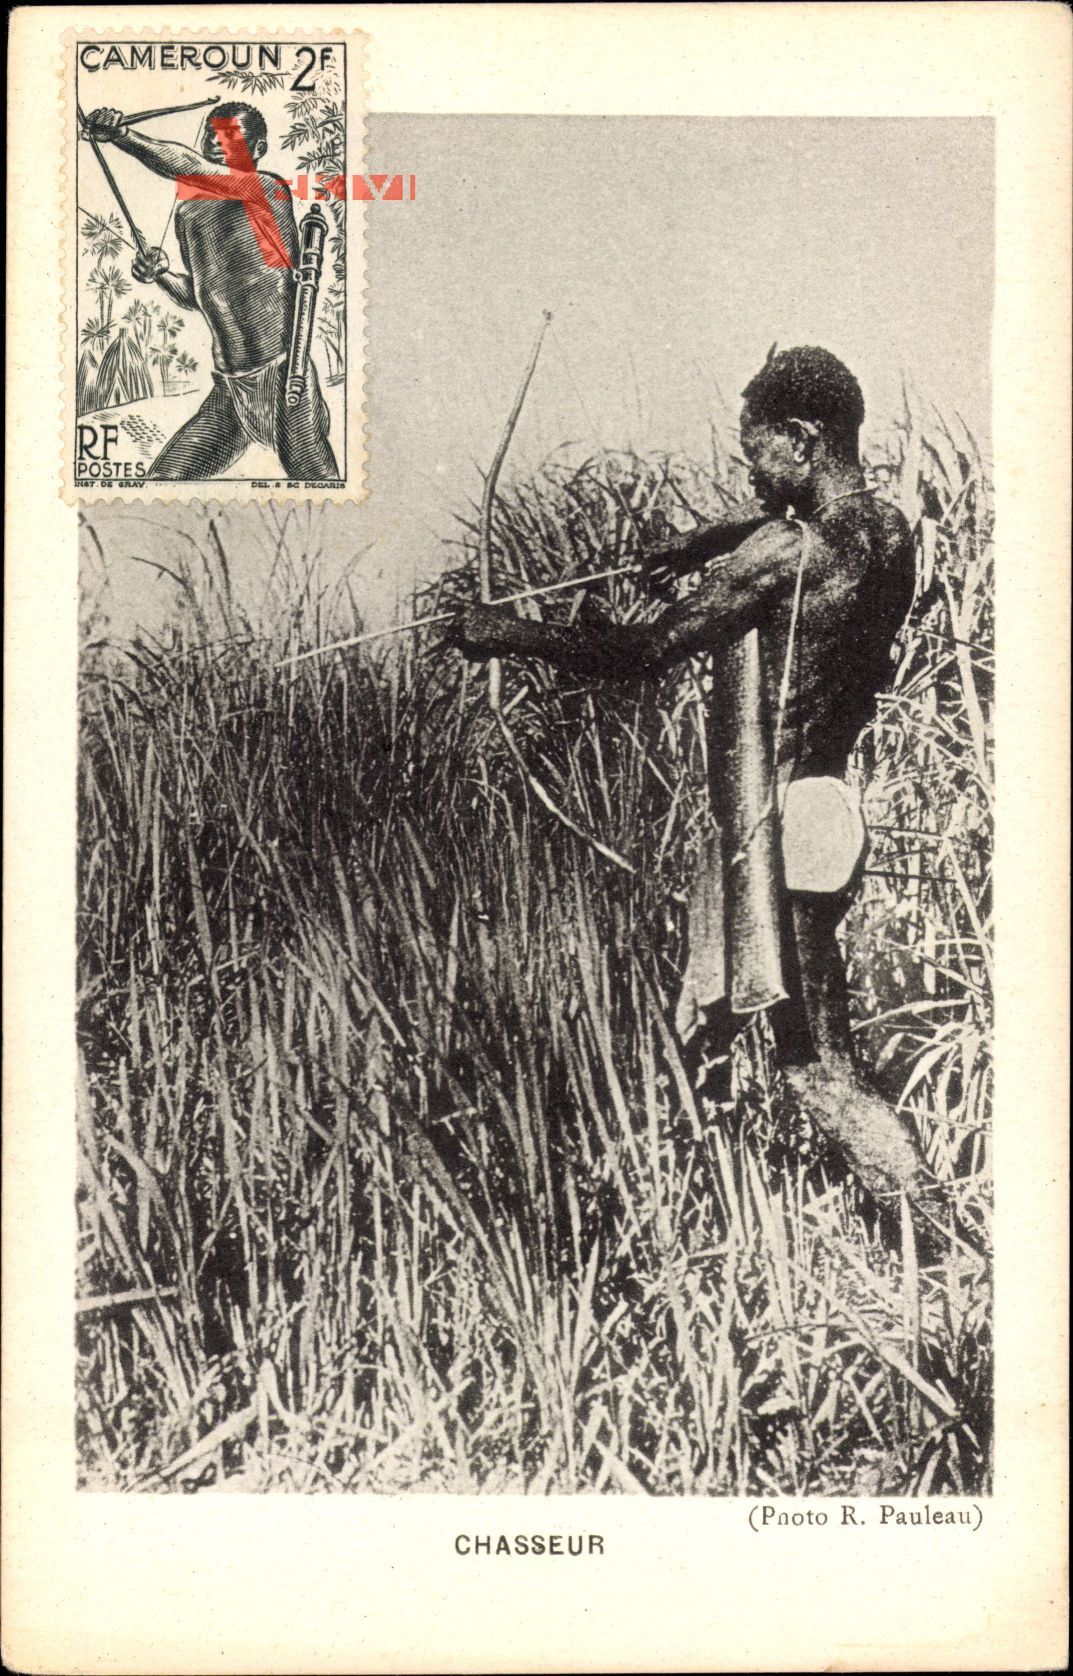 Kamerun, Chasseur, Afrikanischer Jäger mit Pfeil und Bogen